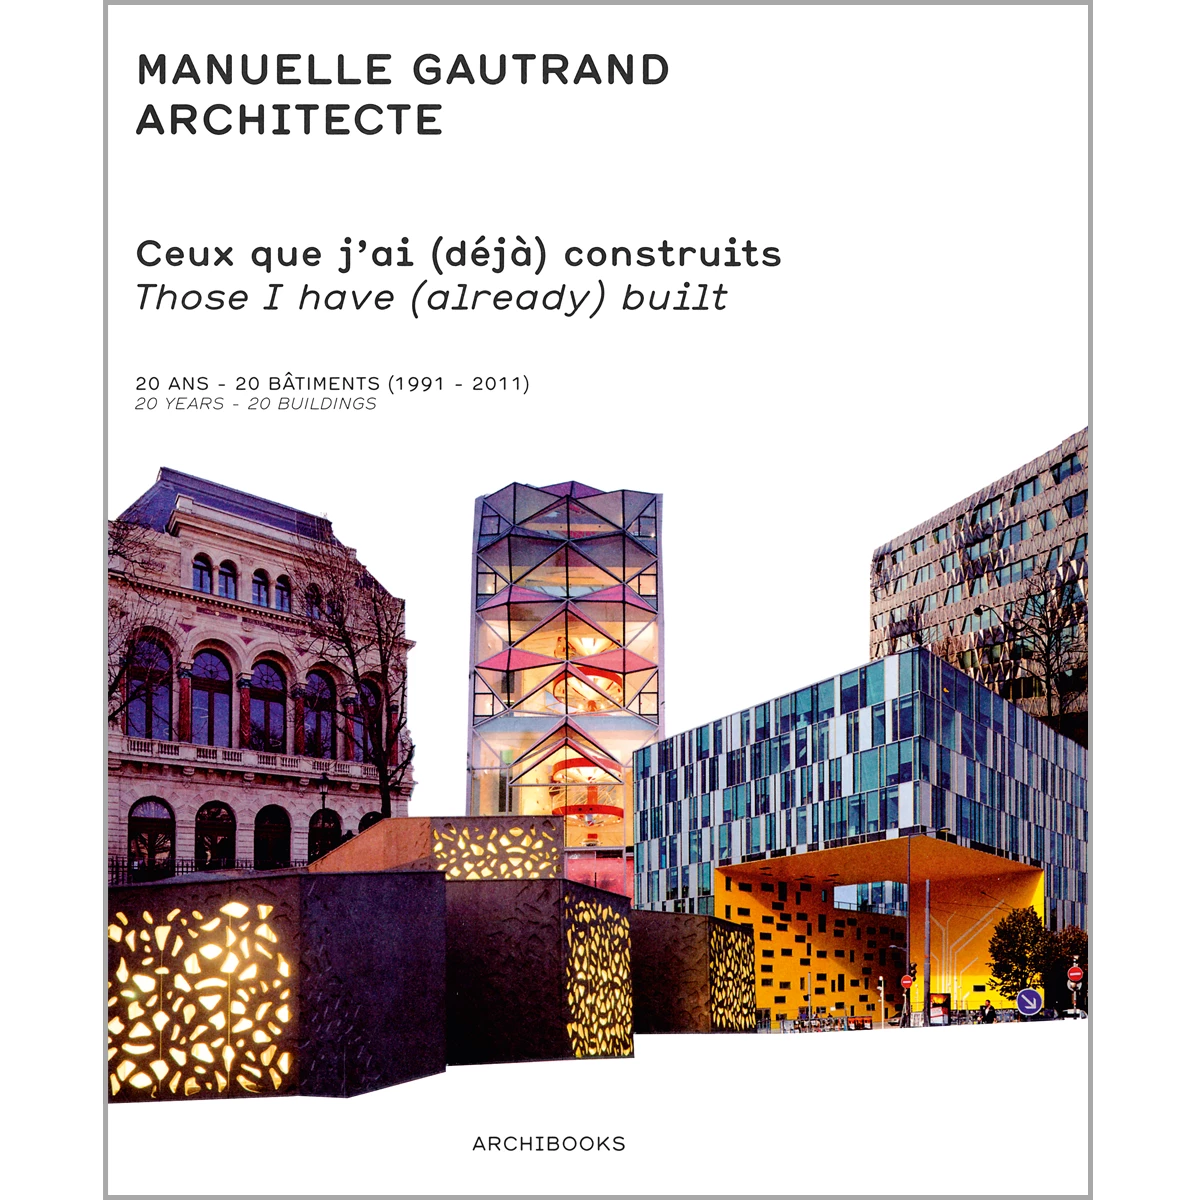 Manuelle Gautrand Architecte